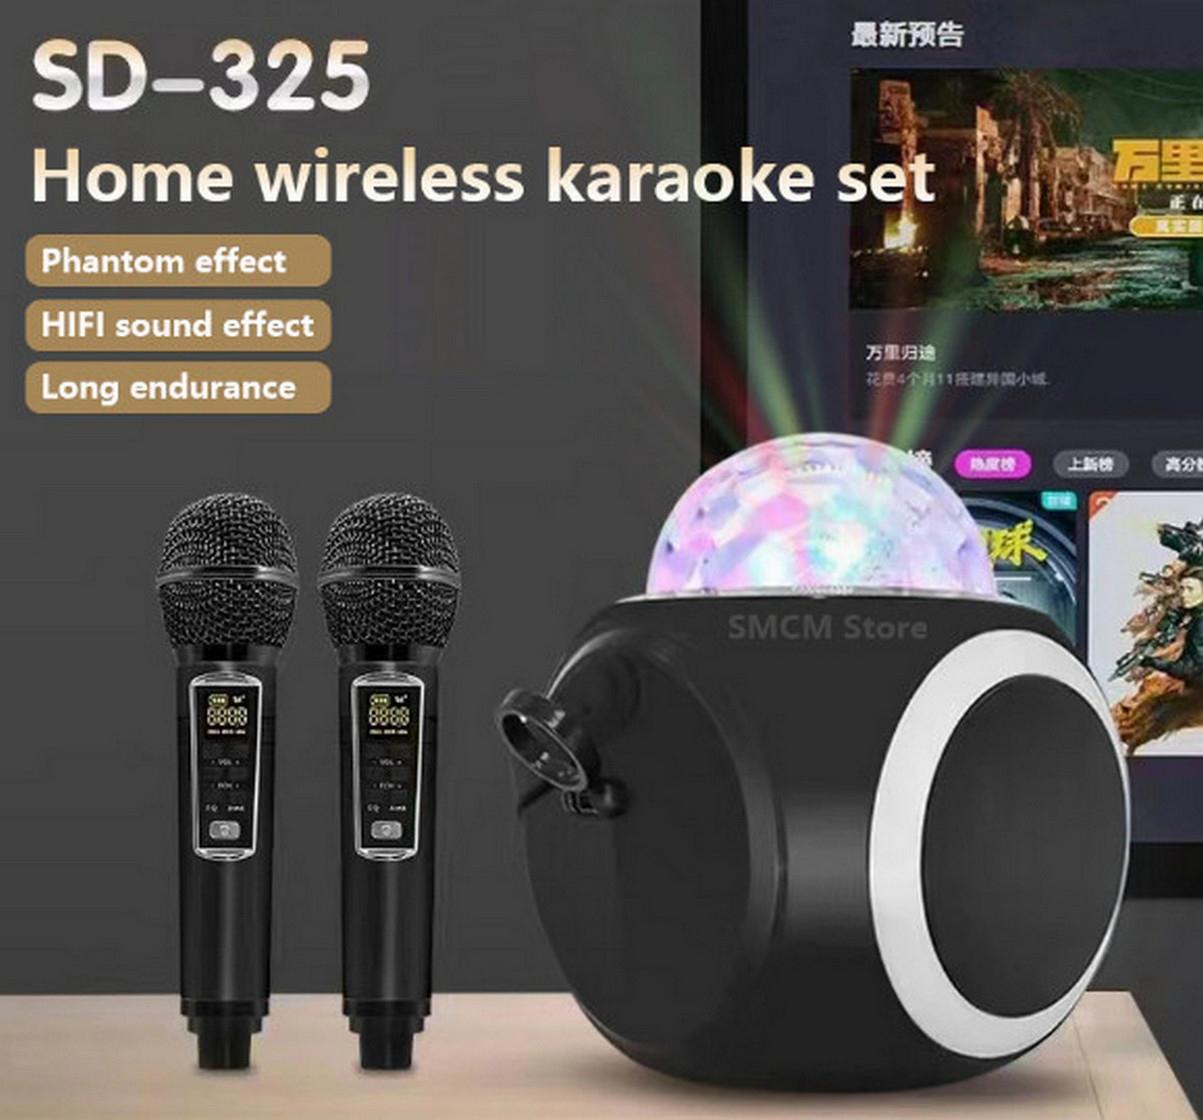 Loa Karaoke Bluetooth SDRD SD-325 Bass Mạnh Led Vũ Trường 3 Chế Độ Ánh Sáng Chuyên Nghiệp Âm Thanh Lớn Hát Hay